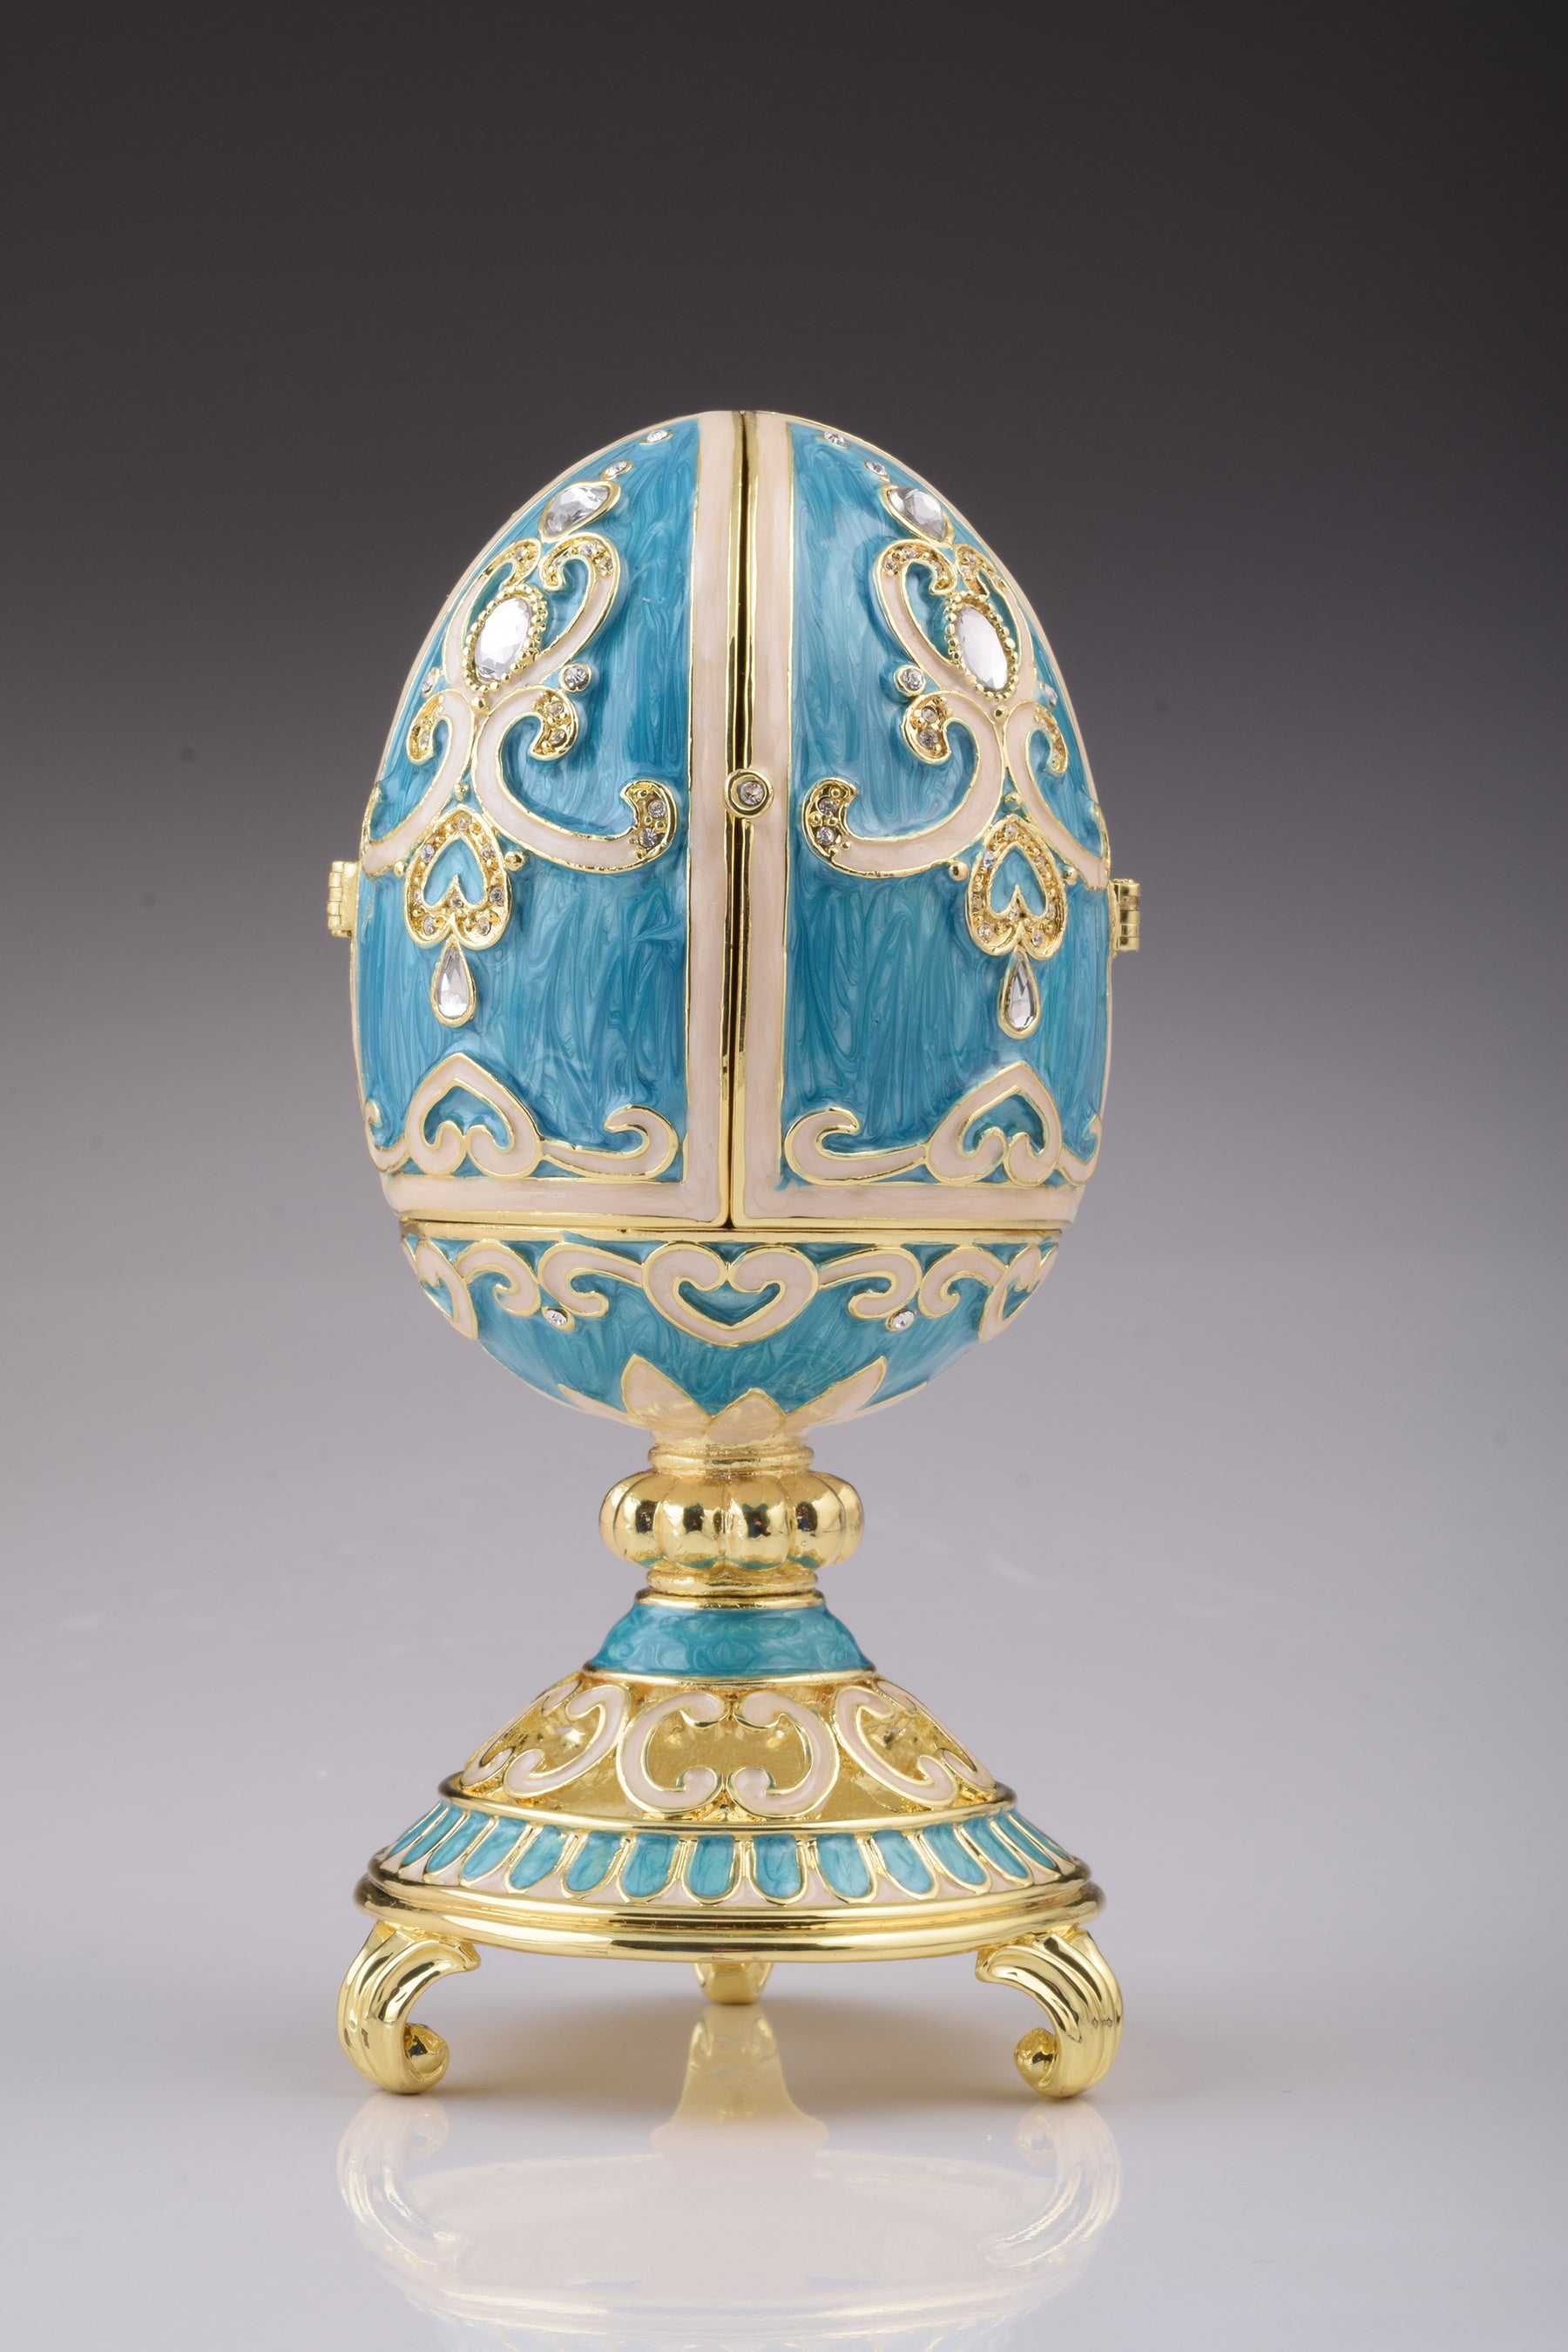 Blaugrünes Fabergé-Ei mit Uhr im Inneren